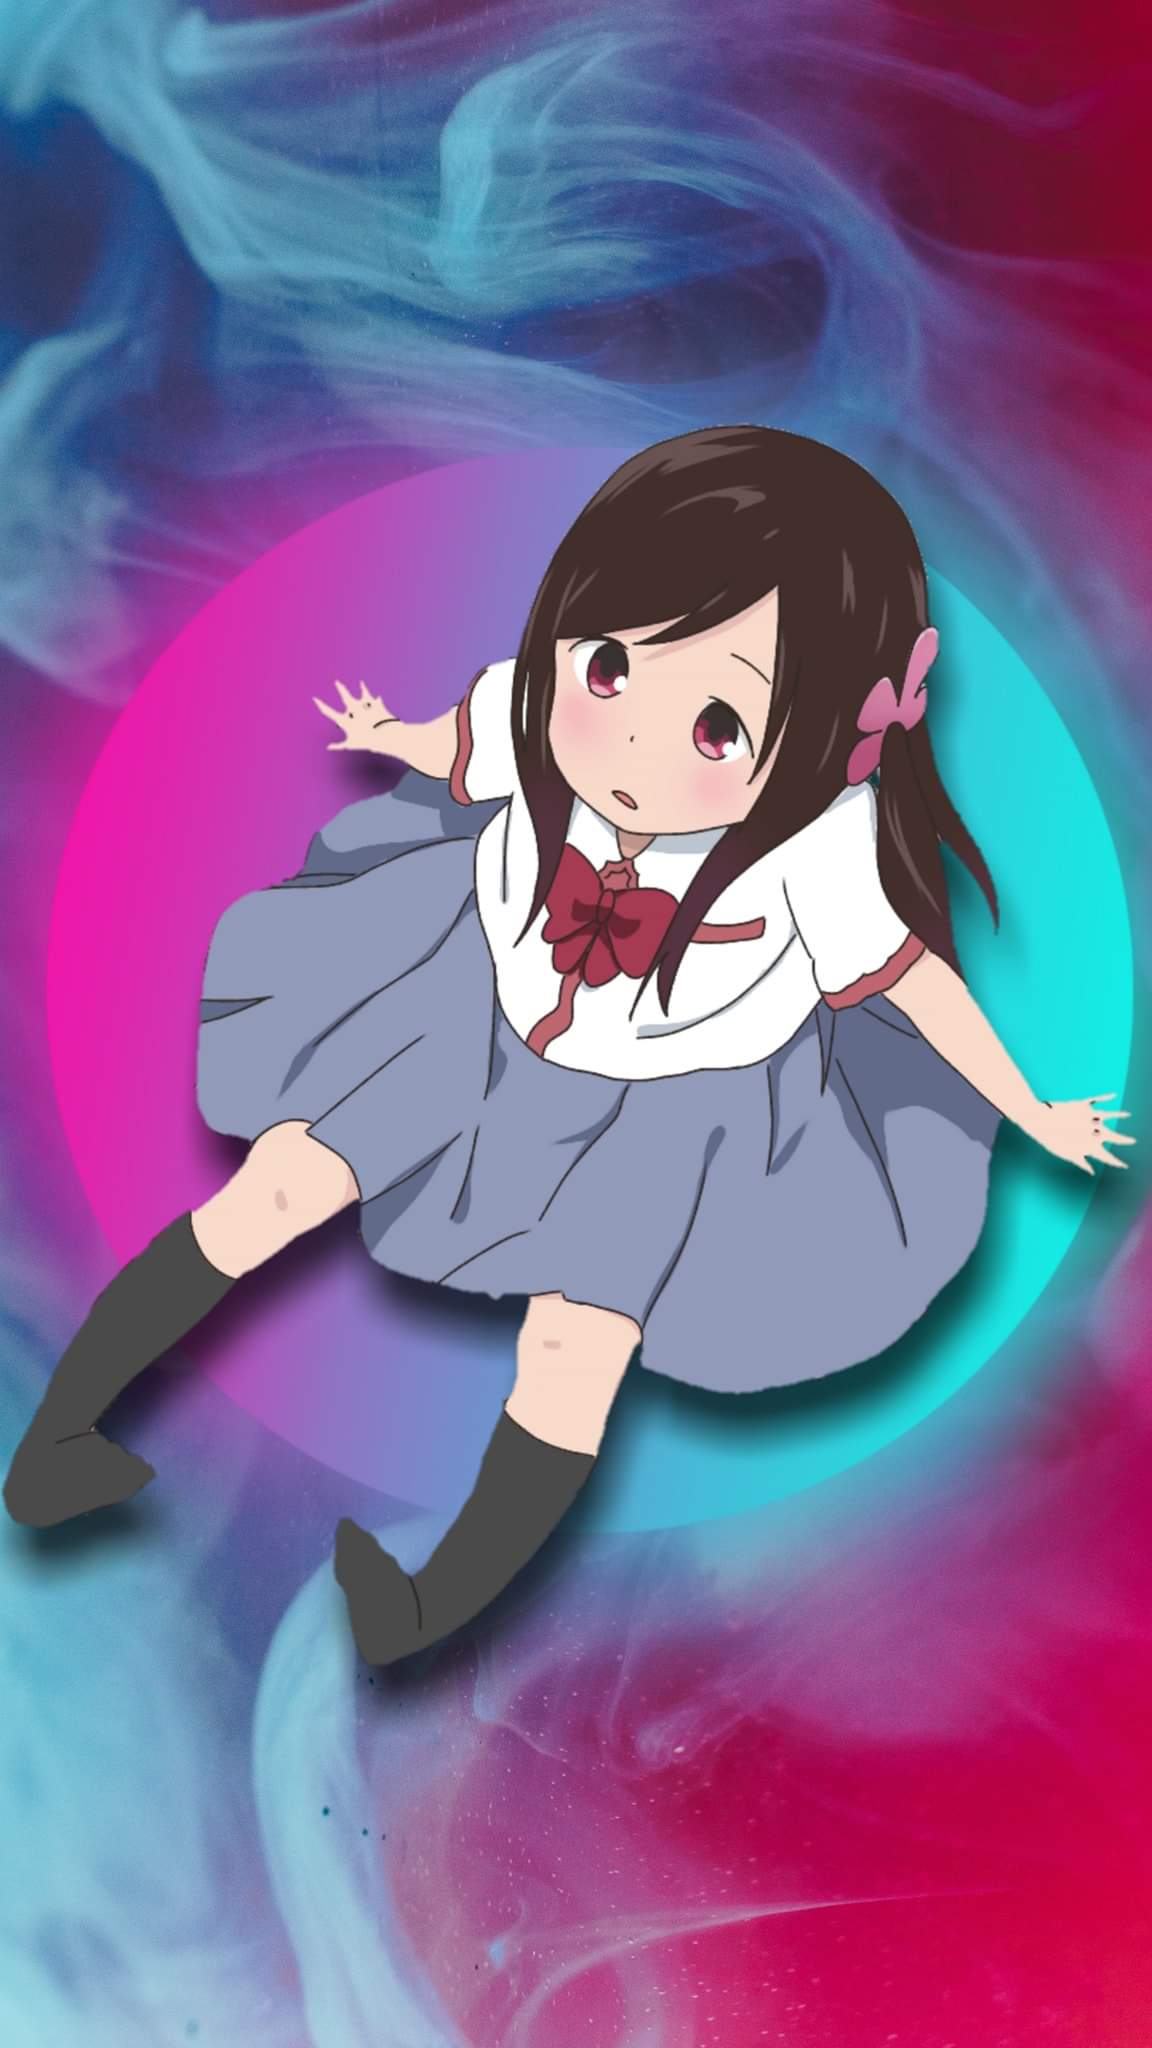 Hitori Bocchi Render - Anime Render by NikTushi on DeviantArt